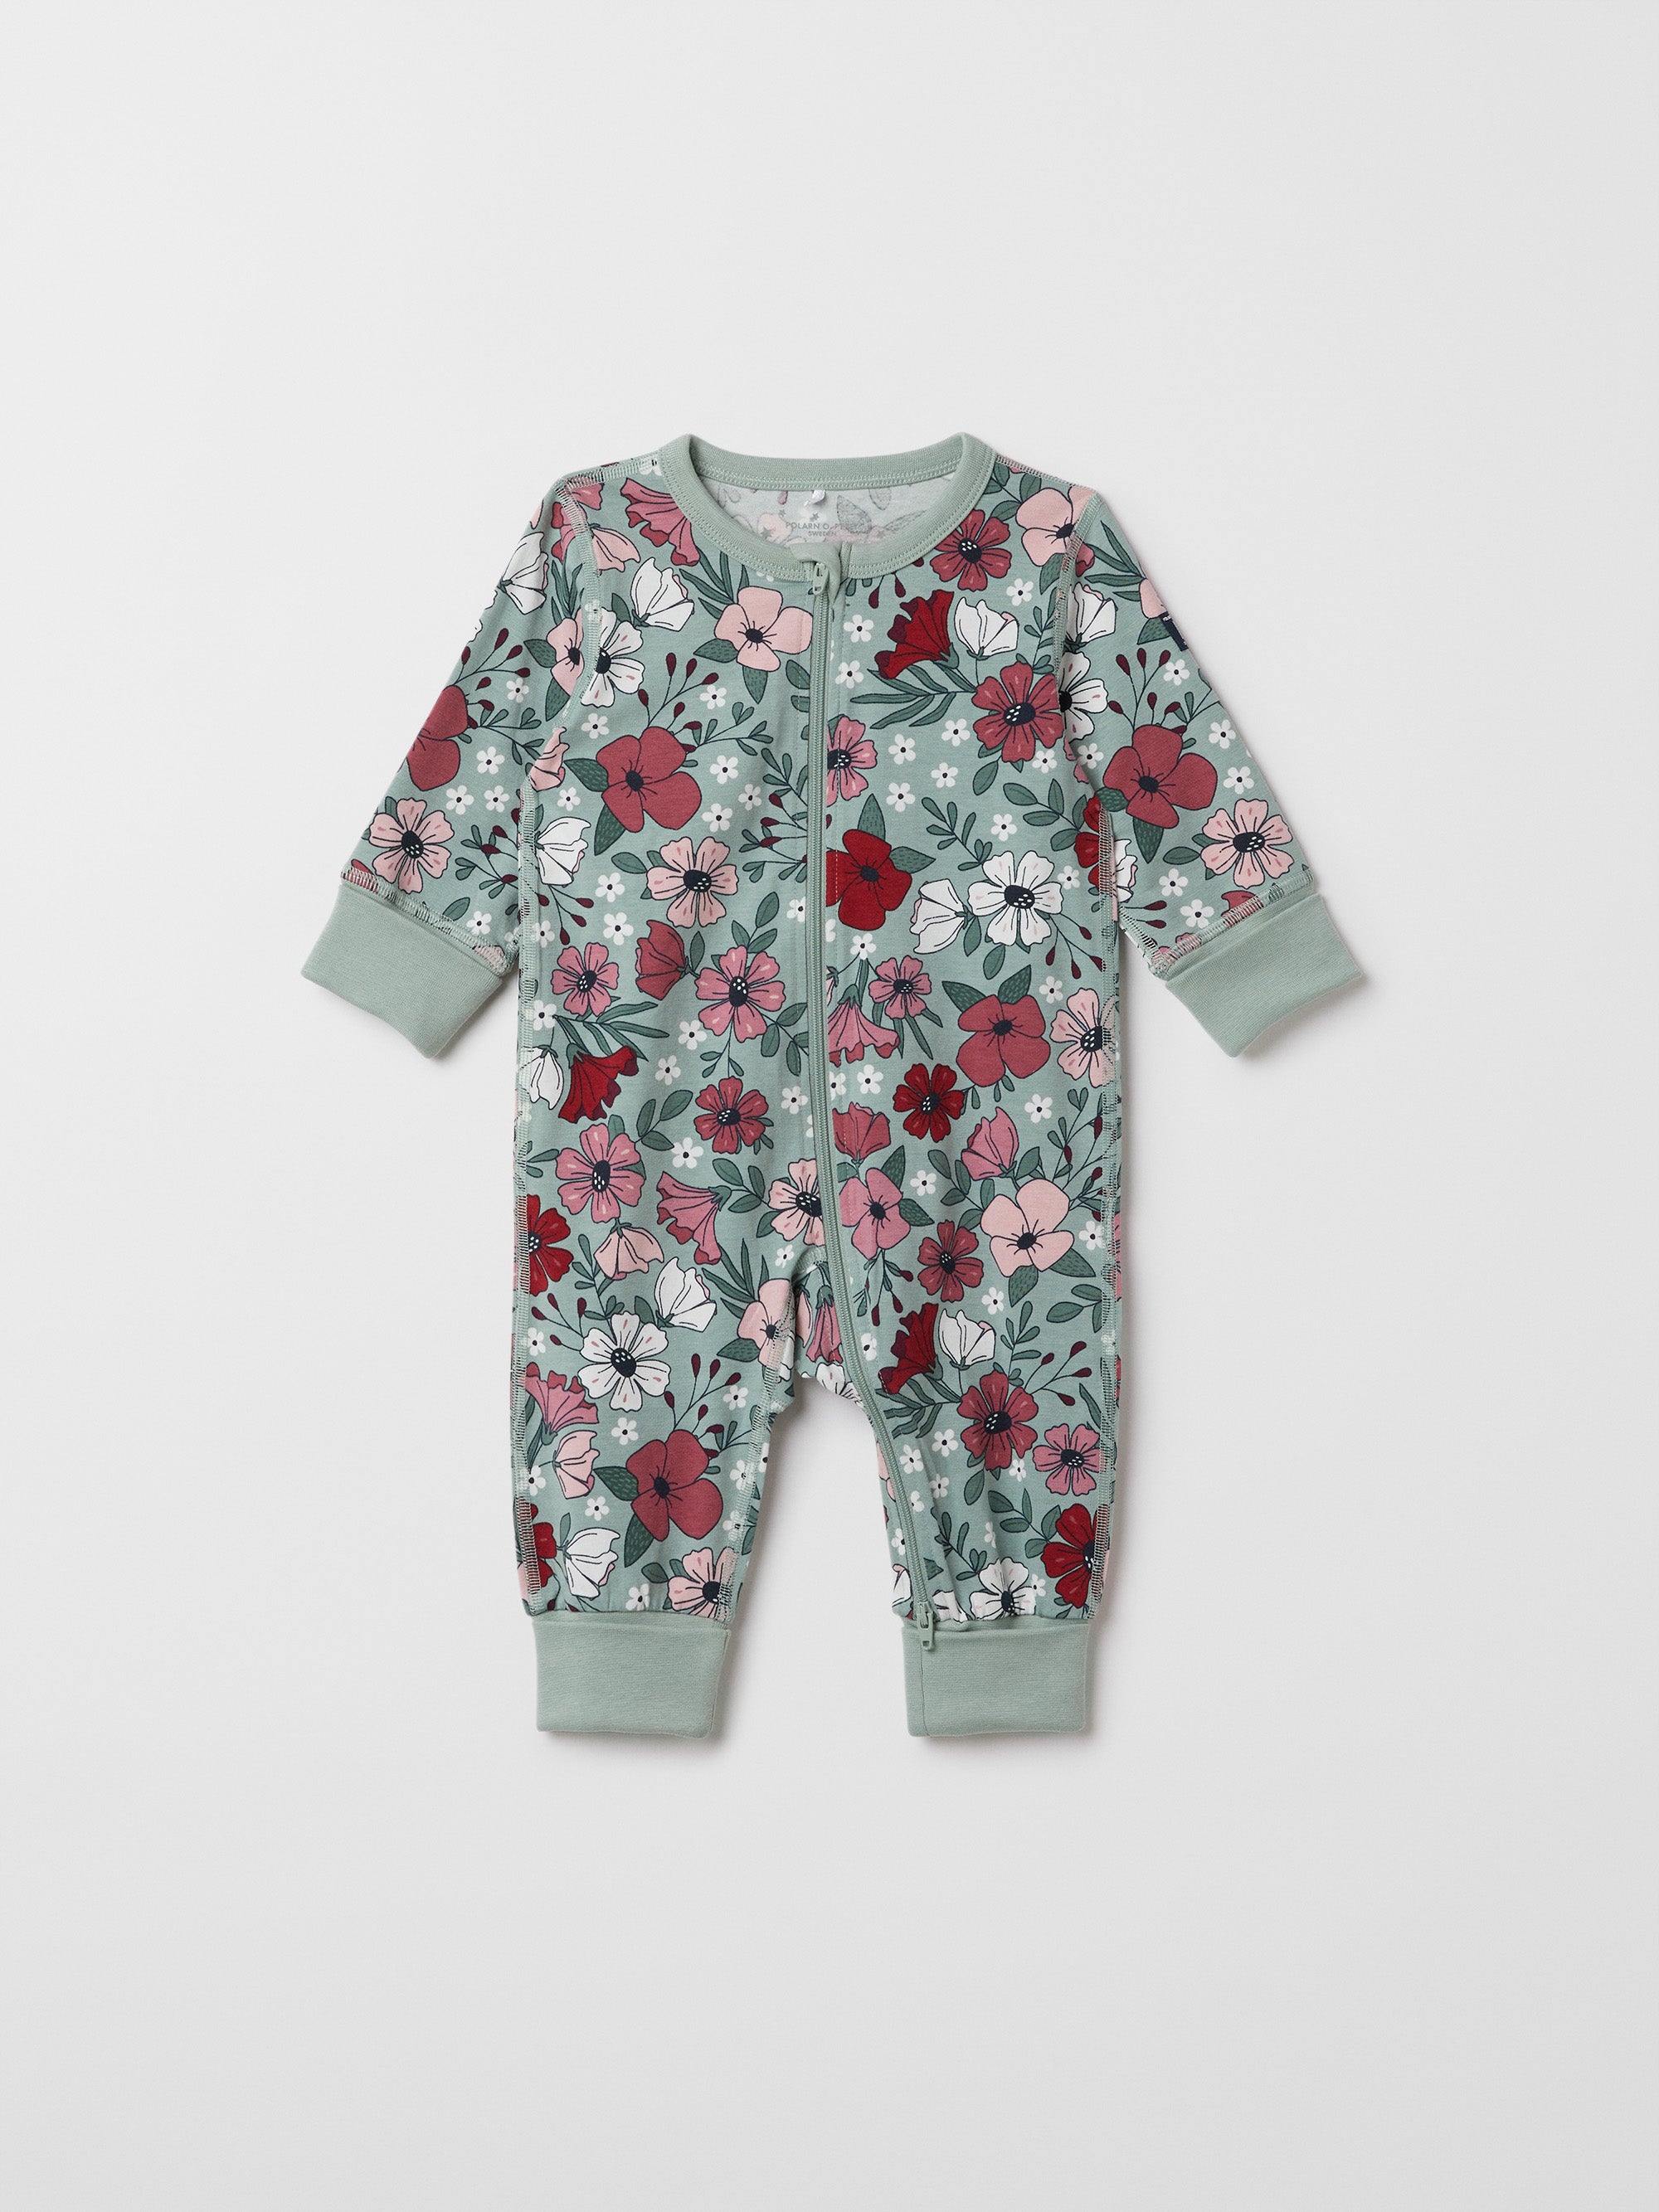 Floral Print Baby Sleepsuit